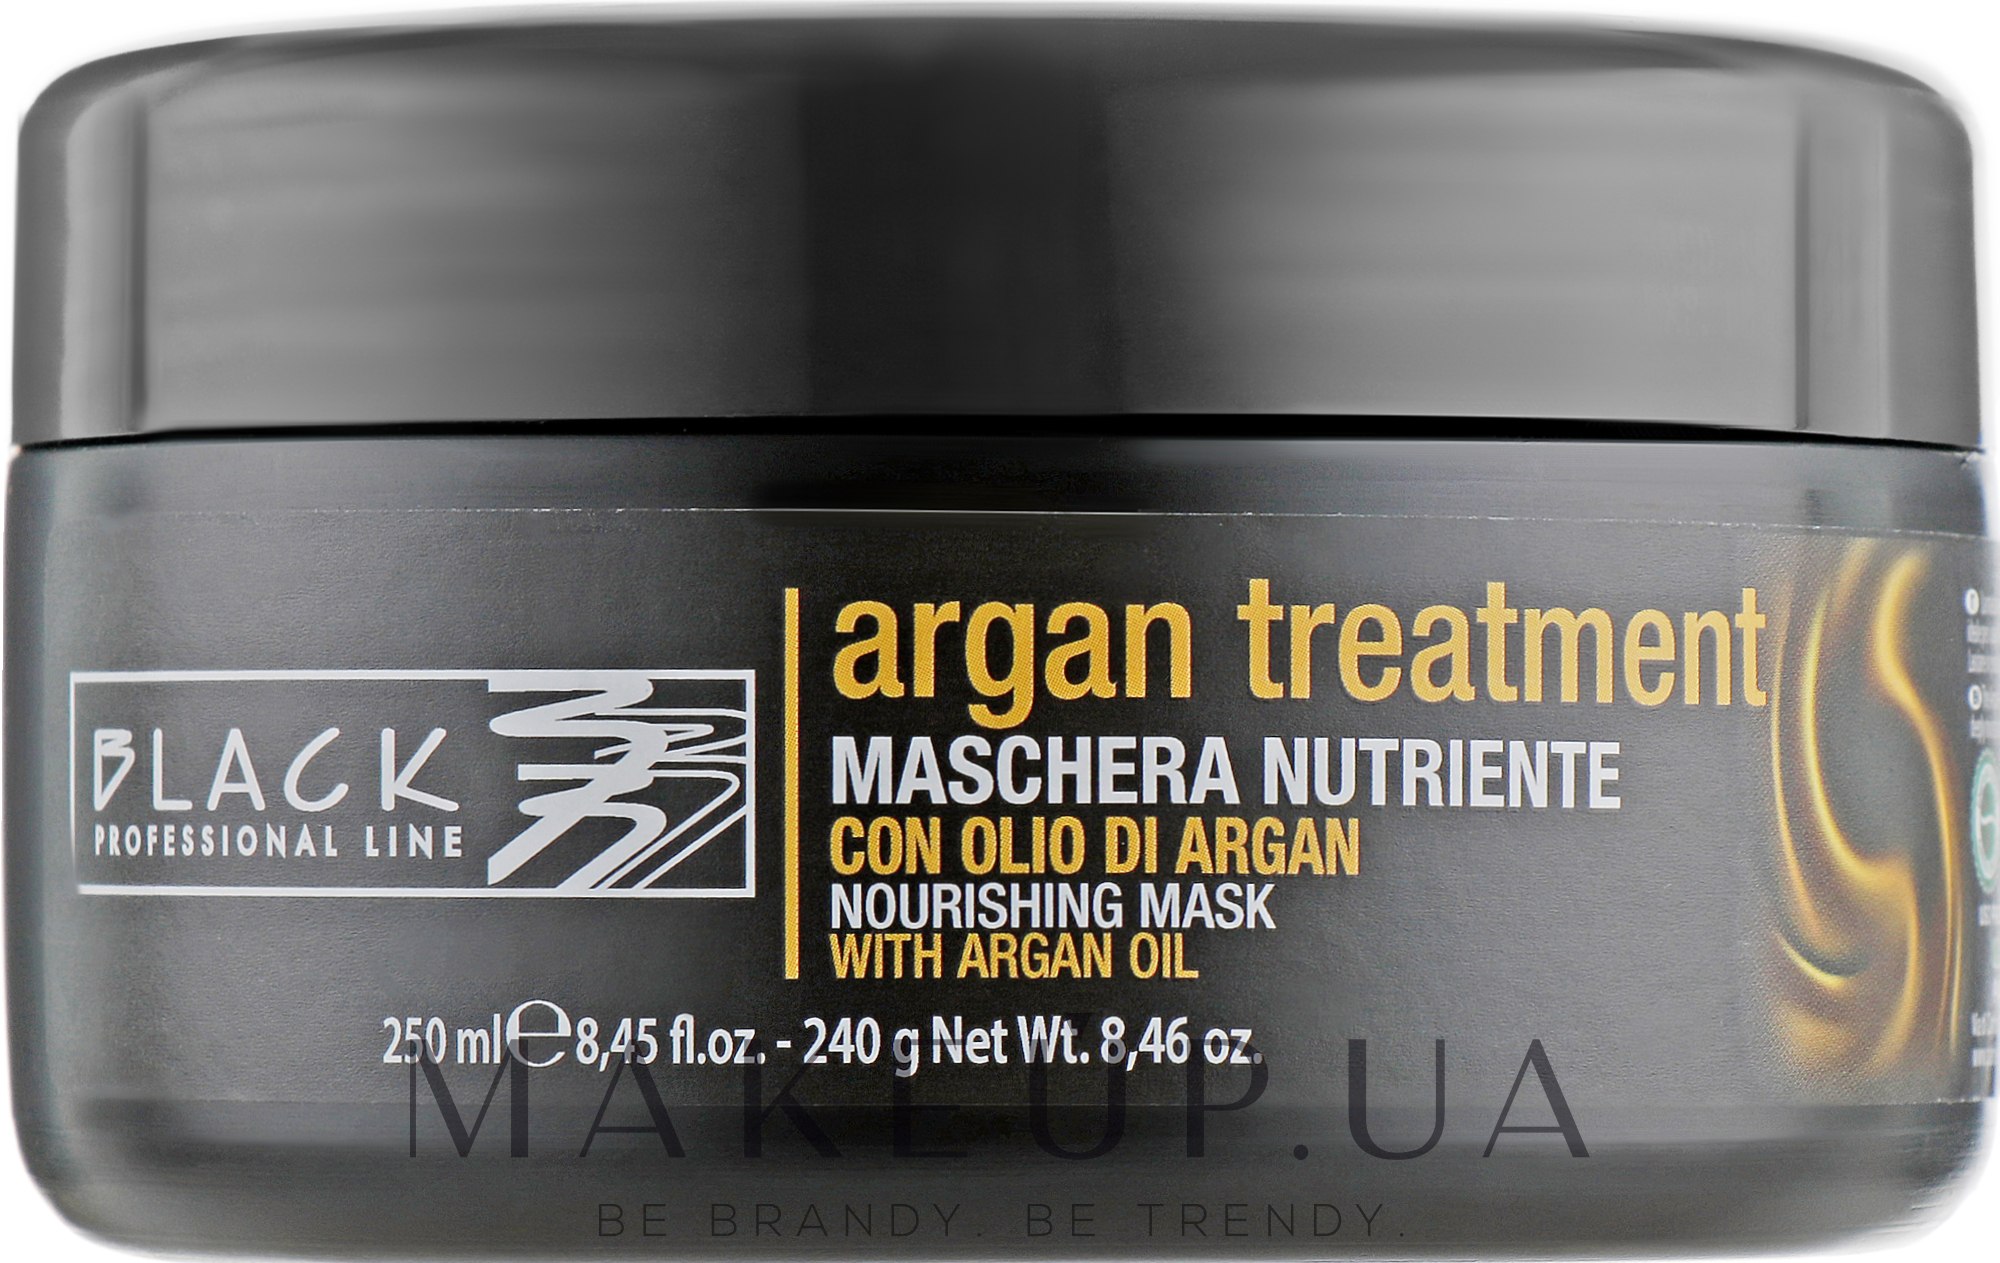 Маска для волос с аргановым маслом, кератином и коллагеном - Black Professional Line Argan Treatment Mask  — фото 250ml